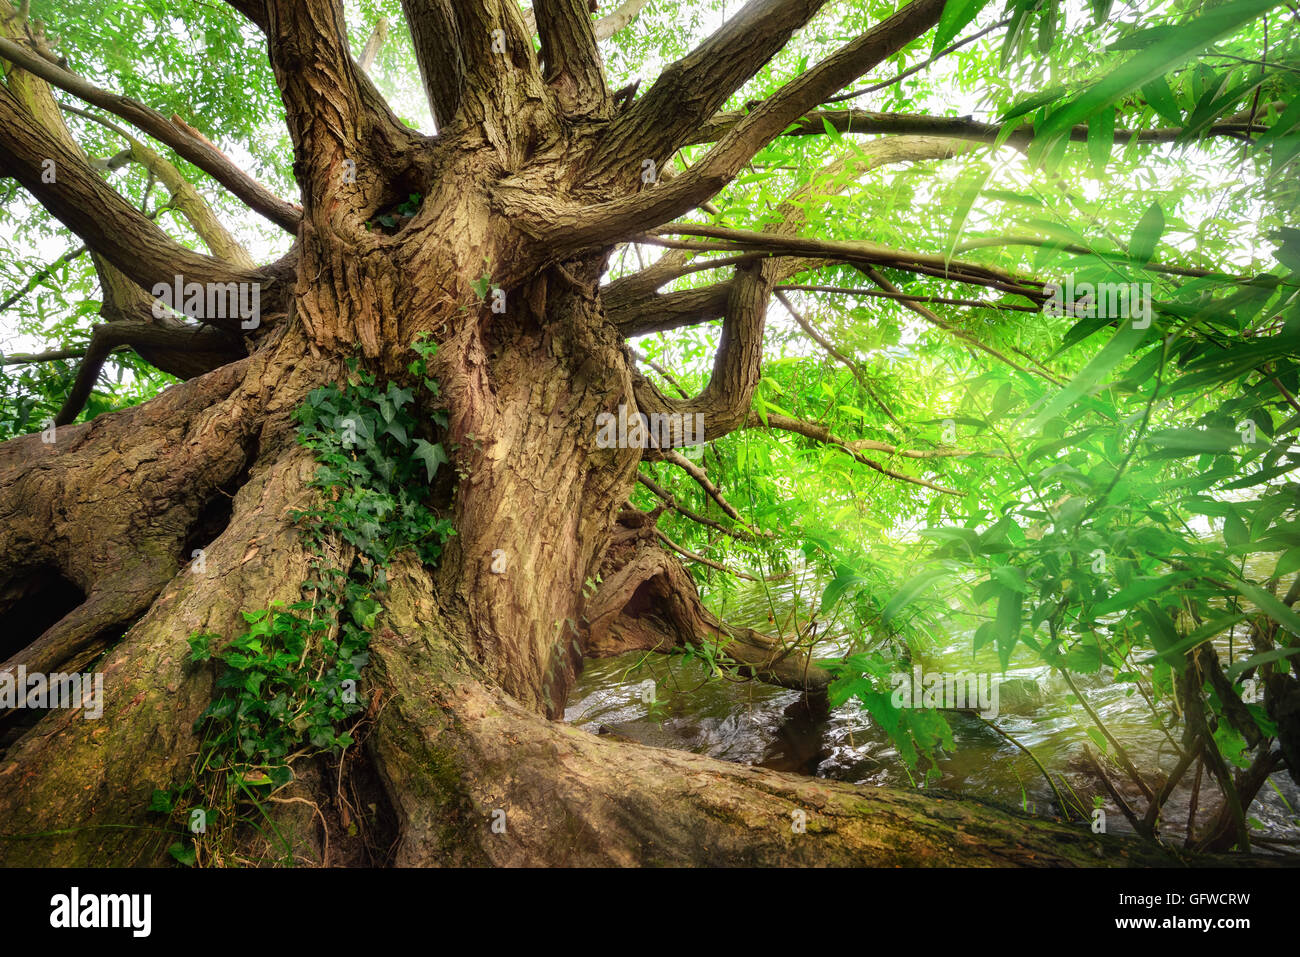 Impressionnant tronc de l'arbre à feuillage vert près de l'eau, avec des rayons de lumière qui brillait à travers ses branches Banque D'Images